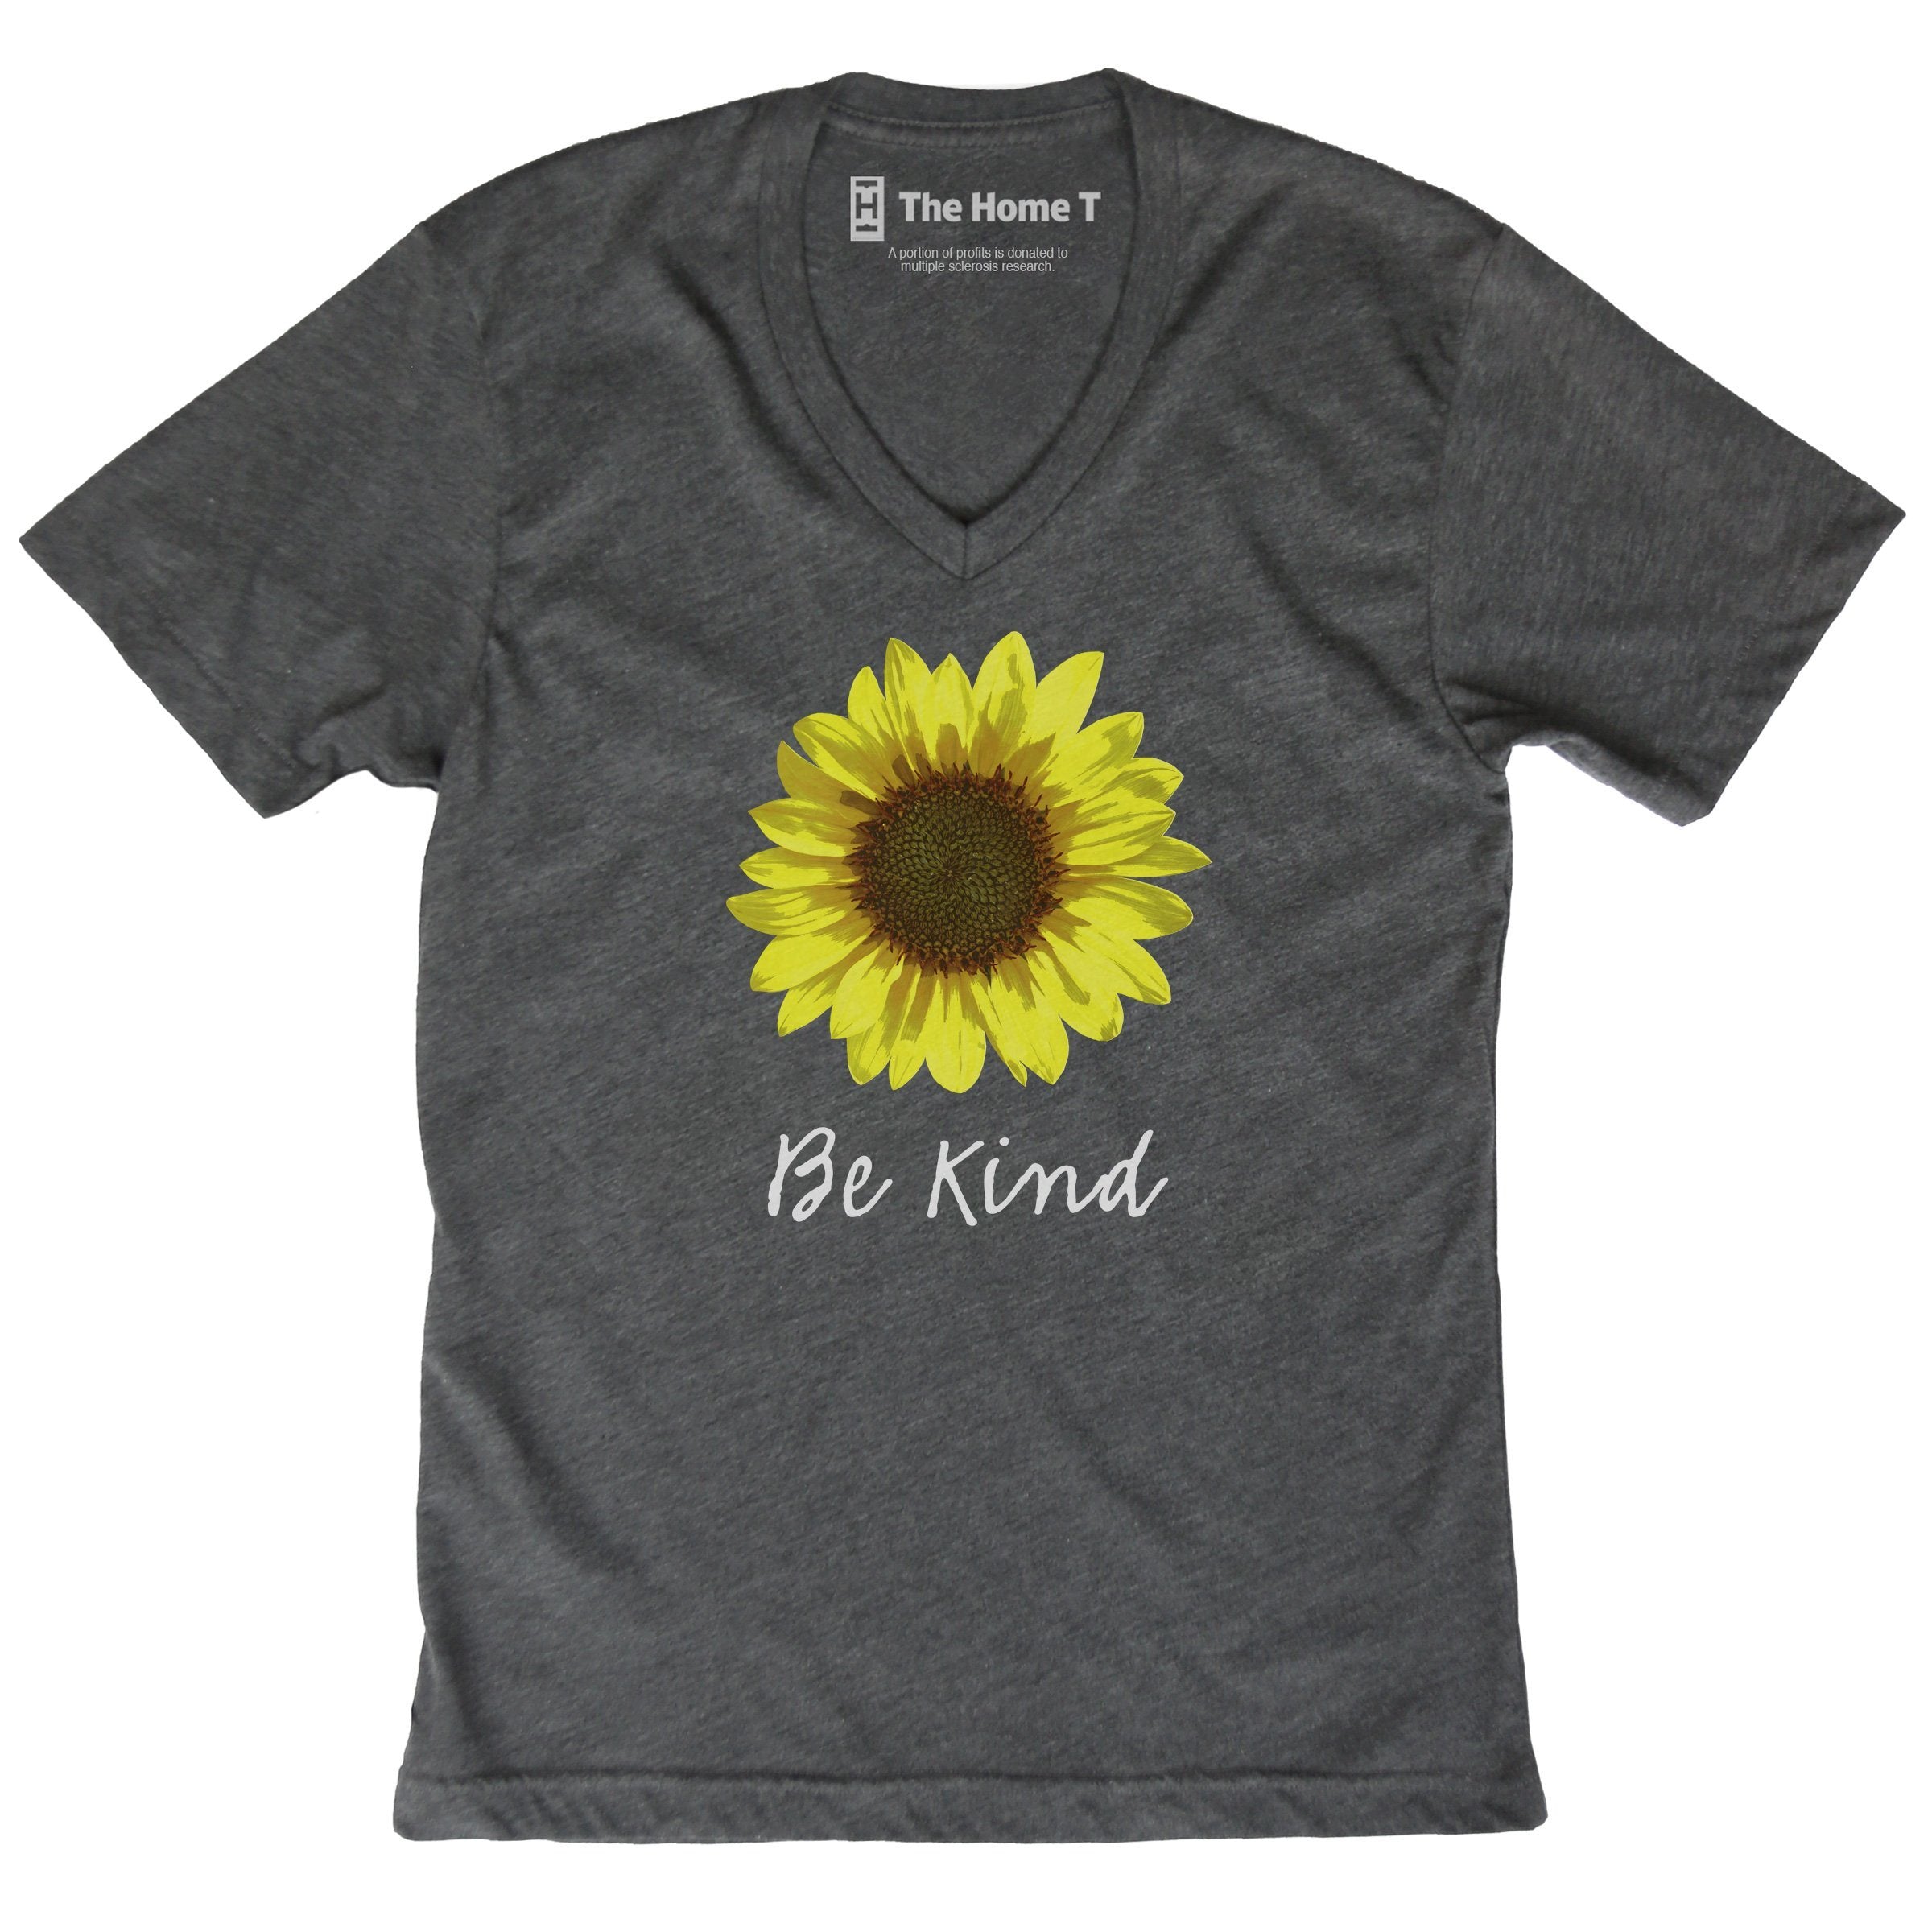 Be Kind Sunflower Grey V-neck